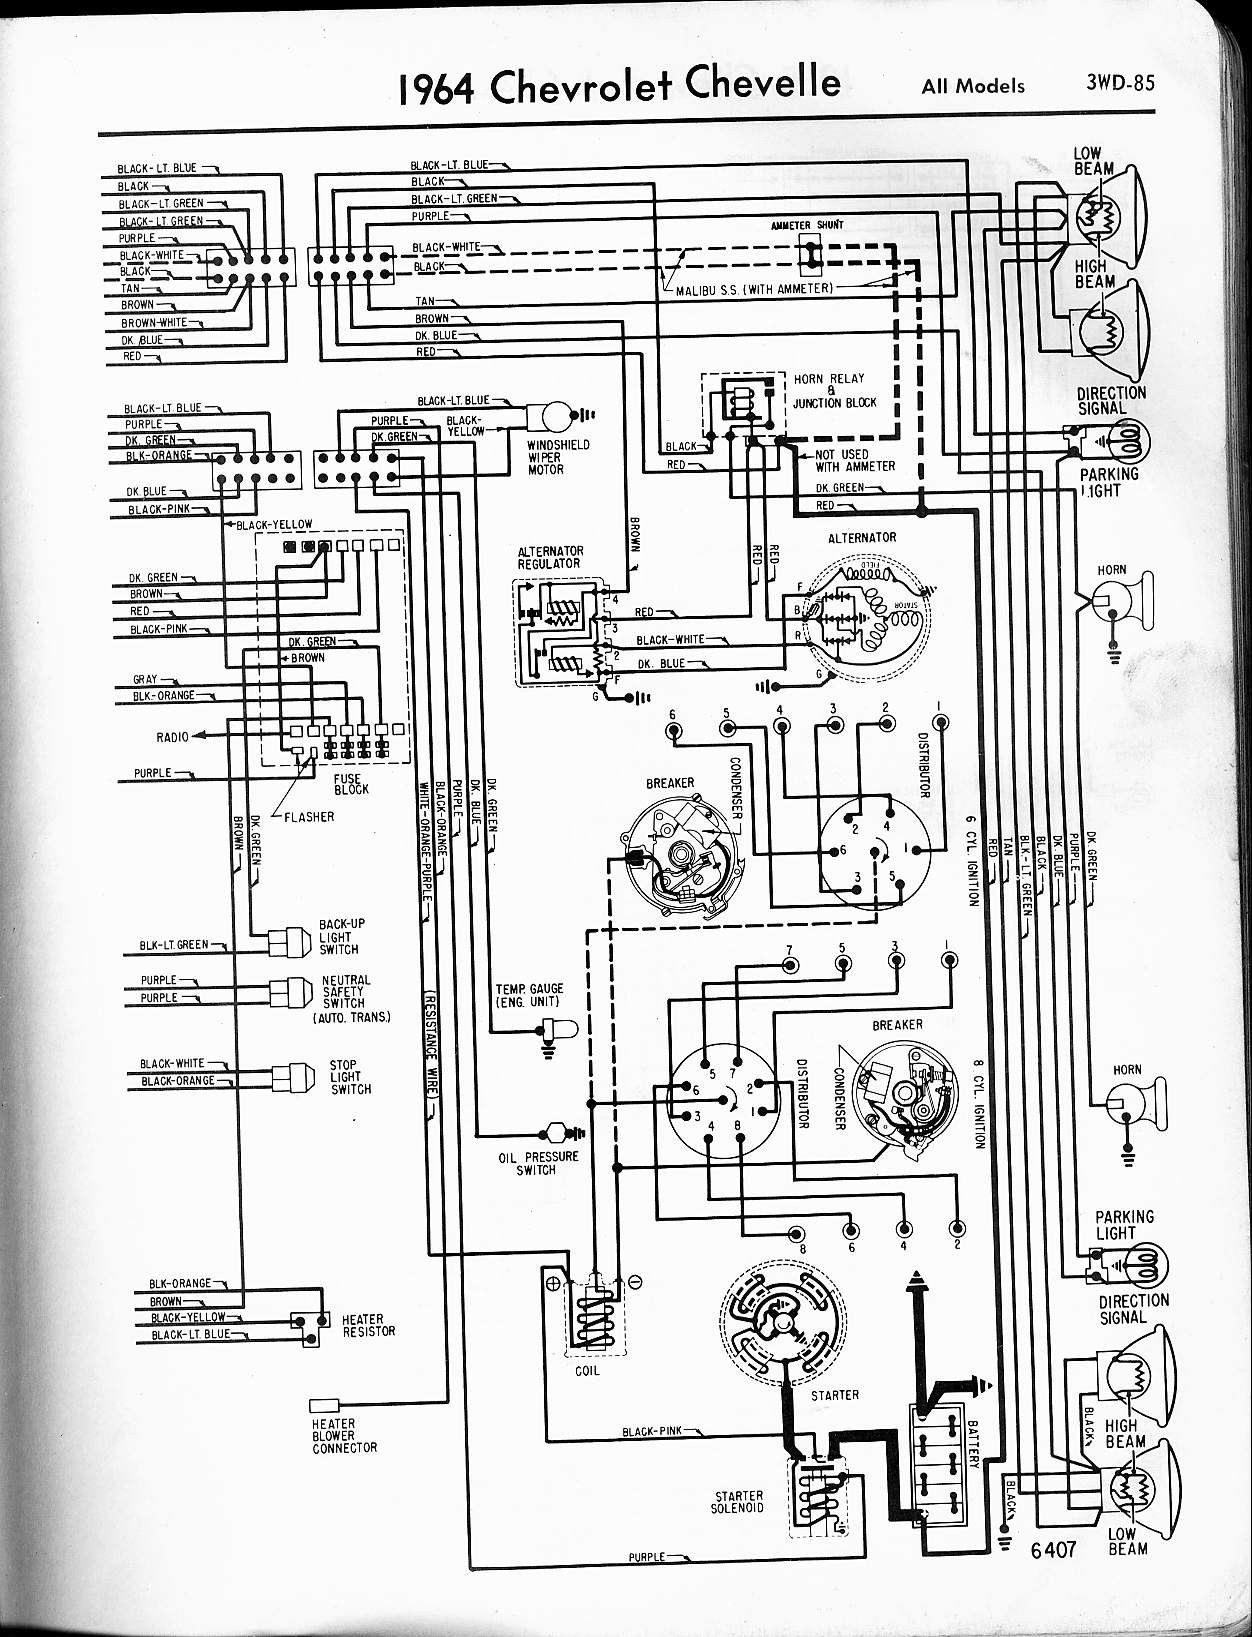 Gm Voltage Regulator Wiring Diagram from detoxicrecenze.com